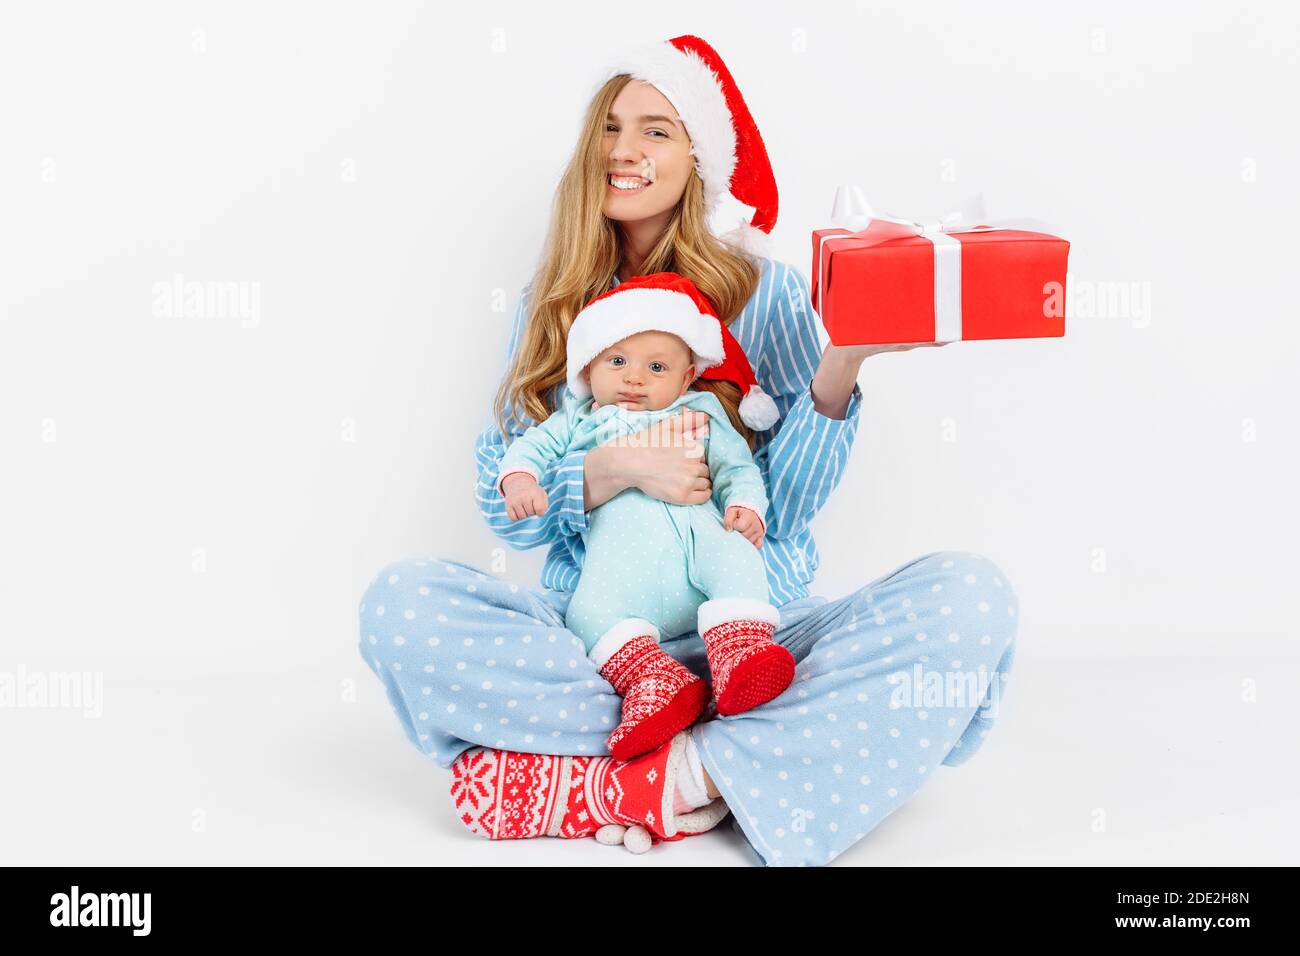 Eine junge Mutter, am Weihnachtstag gibt ein Geschenk an ein neugeborenes Kind, ein Mädchen hält ein Baby in den Armen mit einem Weihnachtsgeschenk, Weihnachtsmorgen in der Familie Stockfoto